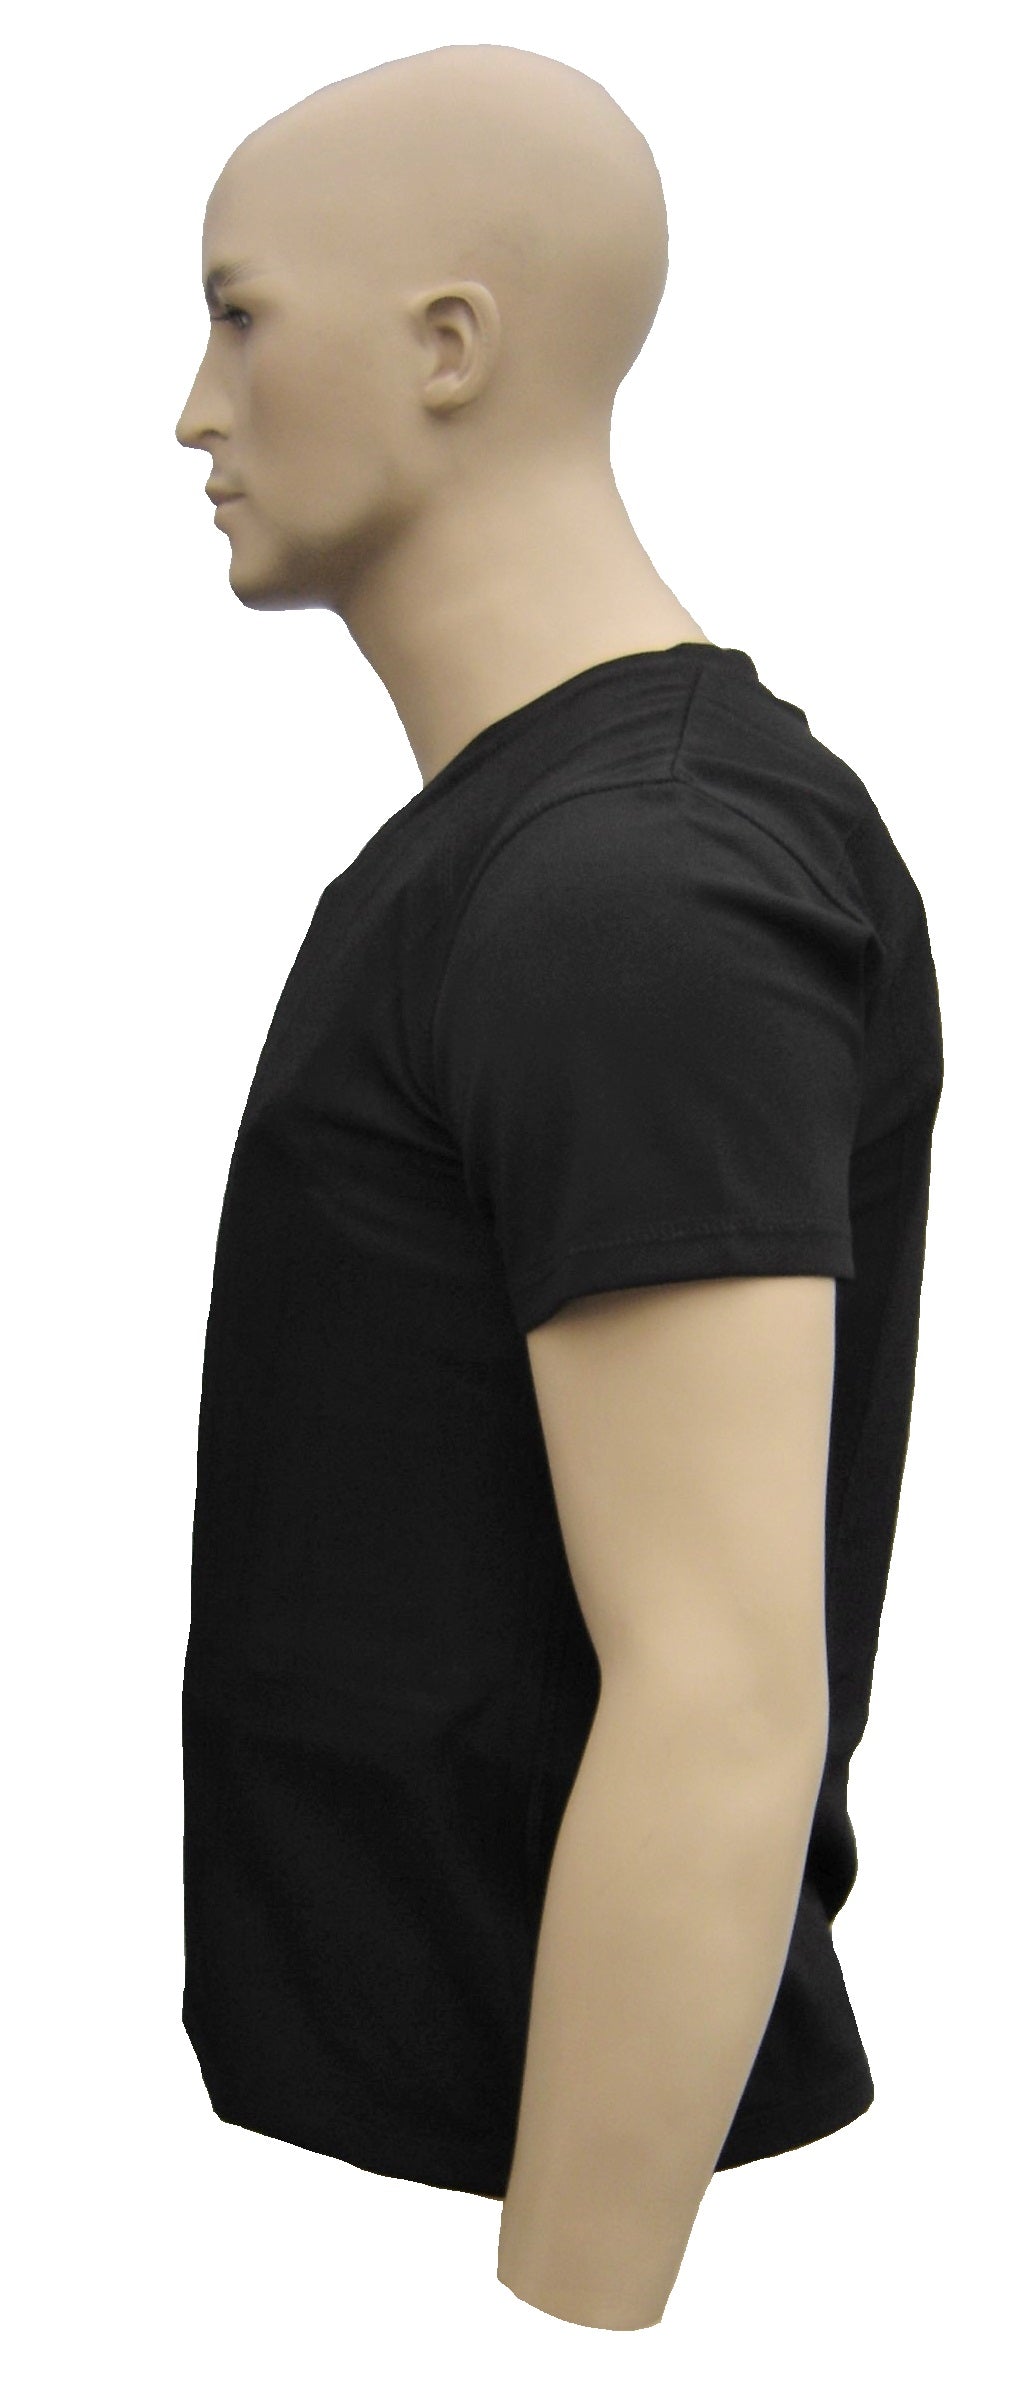 Kogelvrij t-shirt Engarde kogelwerend NIJ 2 COMFORT discrete vest zwart